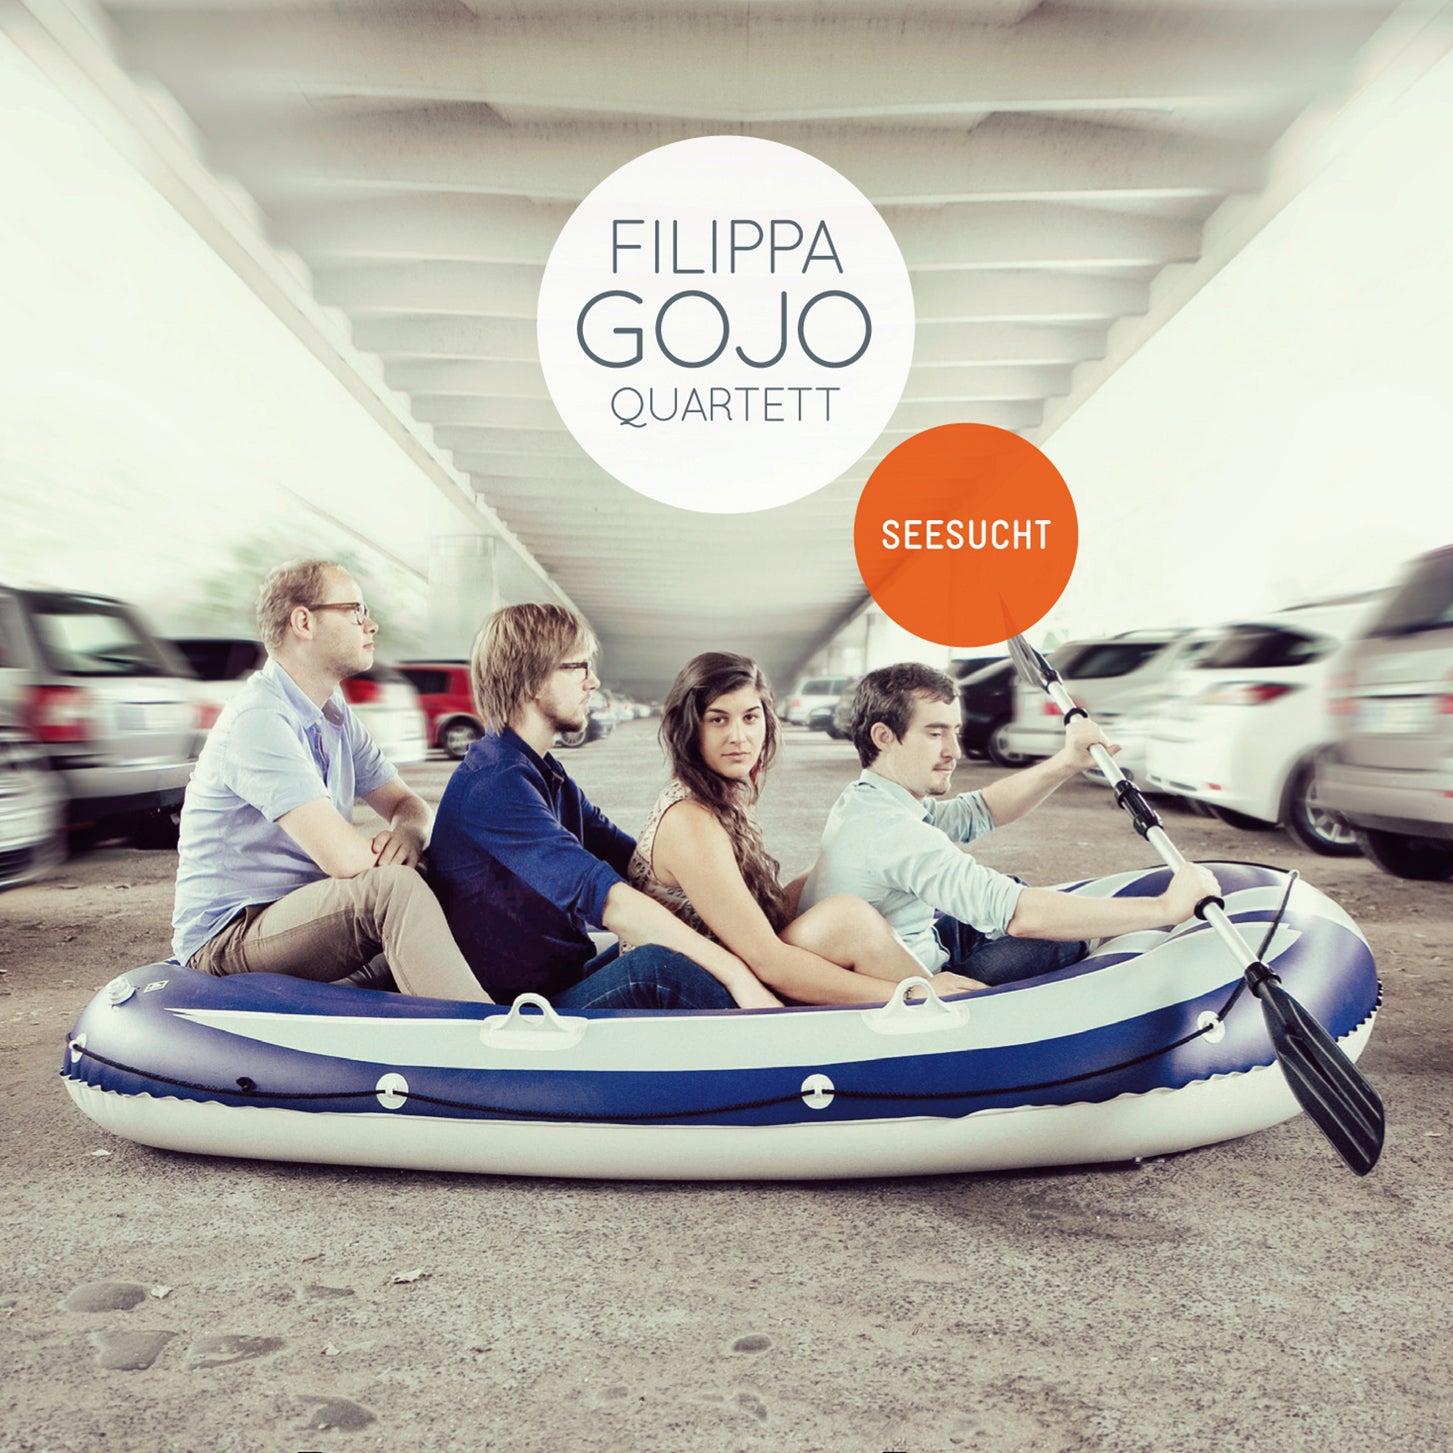 Filippa Gojo Quartett - Seesucht (CD)